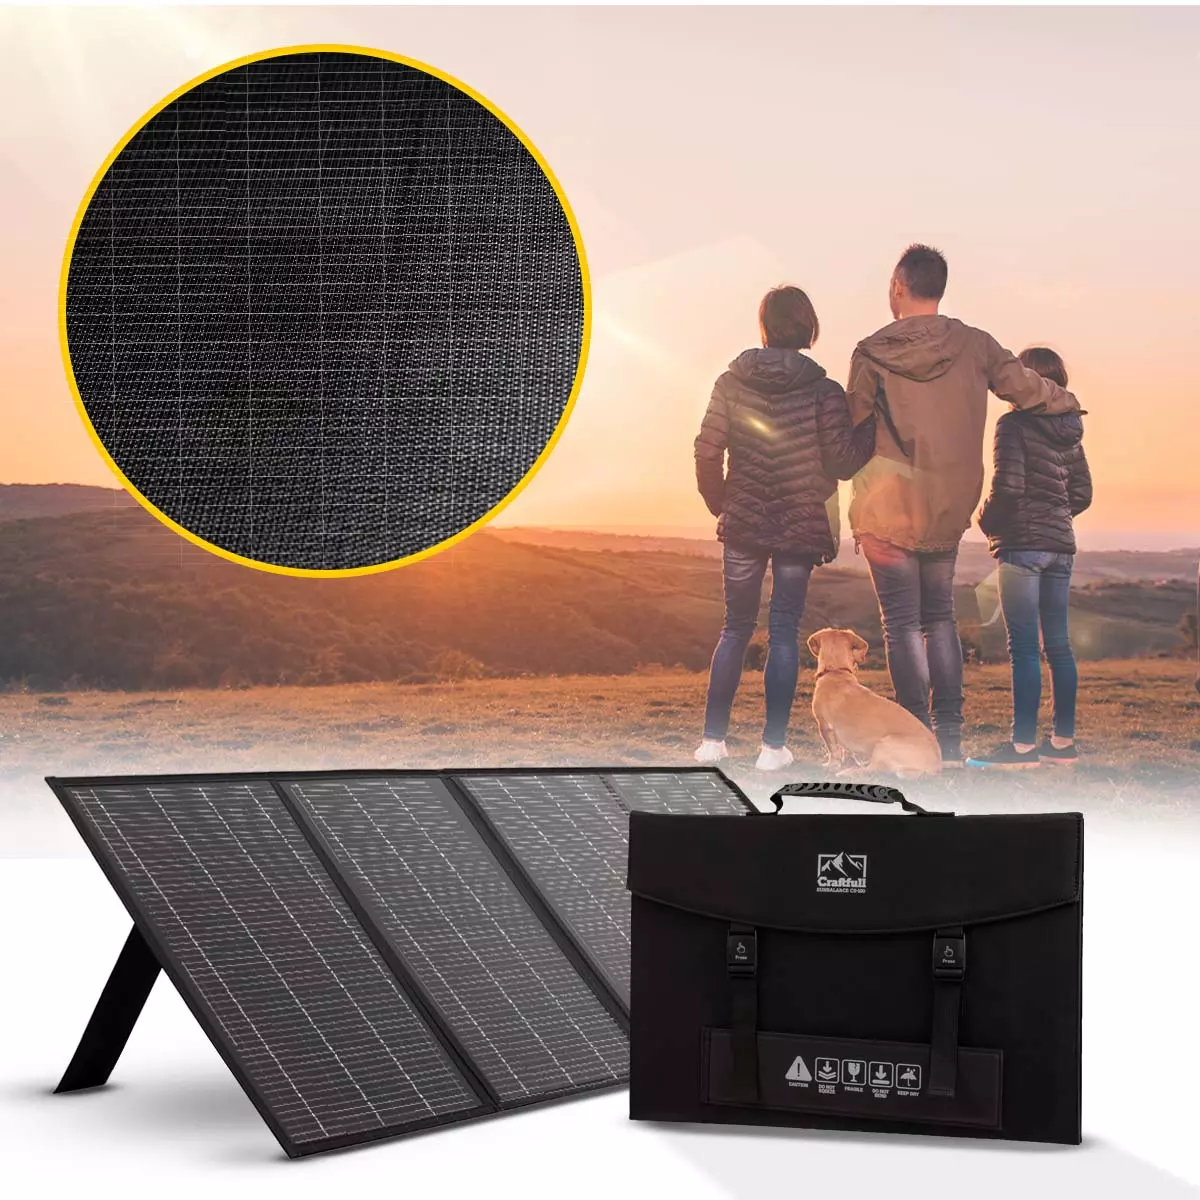 Das Solarmodul steht auf einer Wiese neben einer Familie